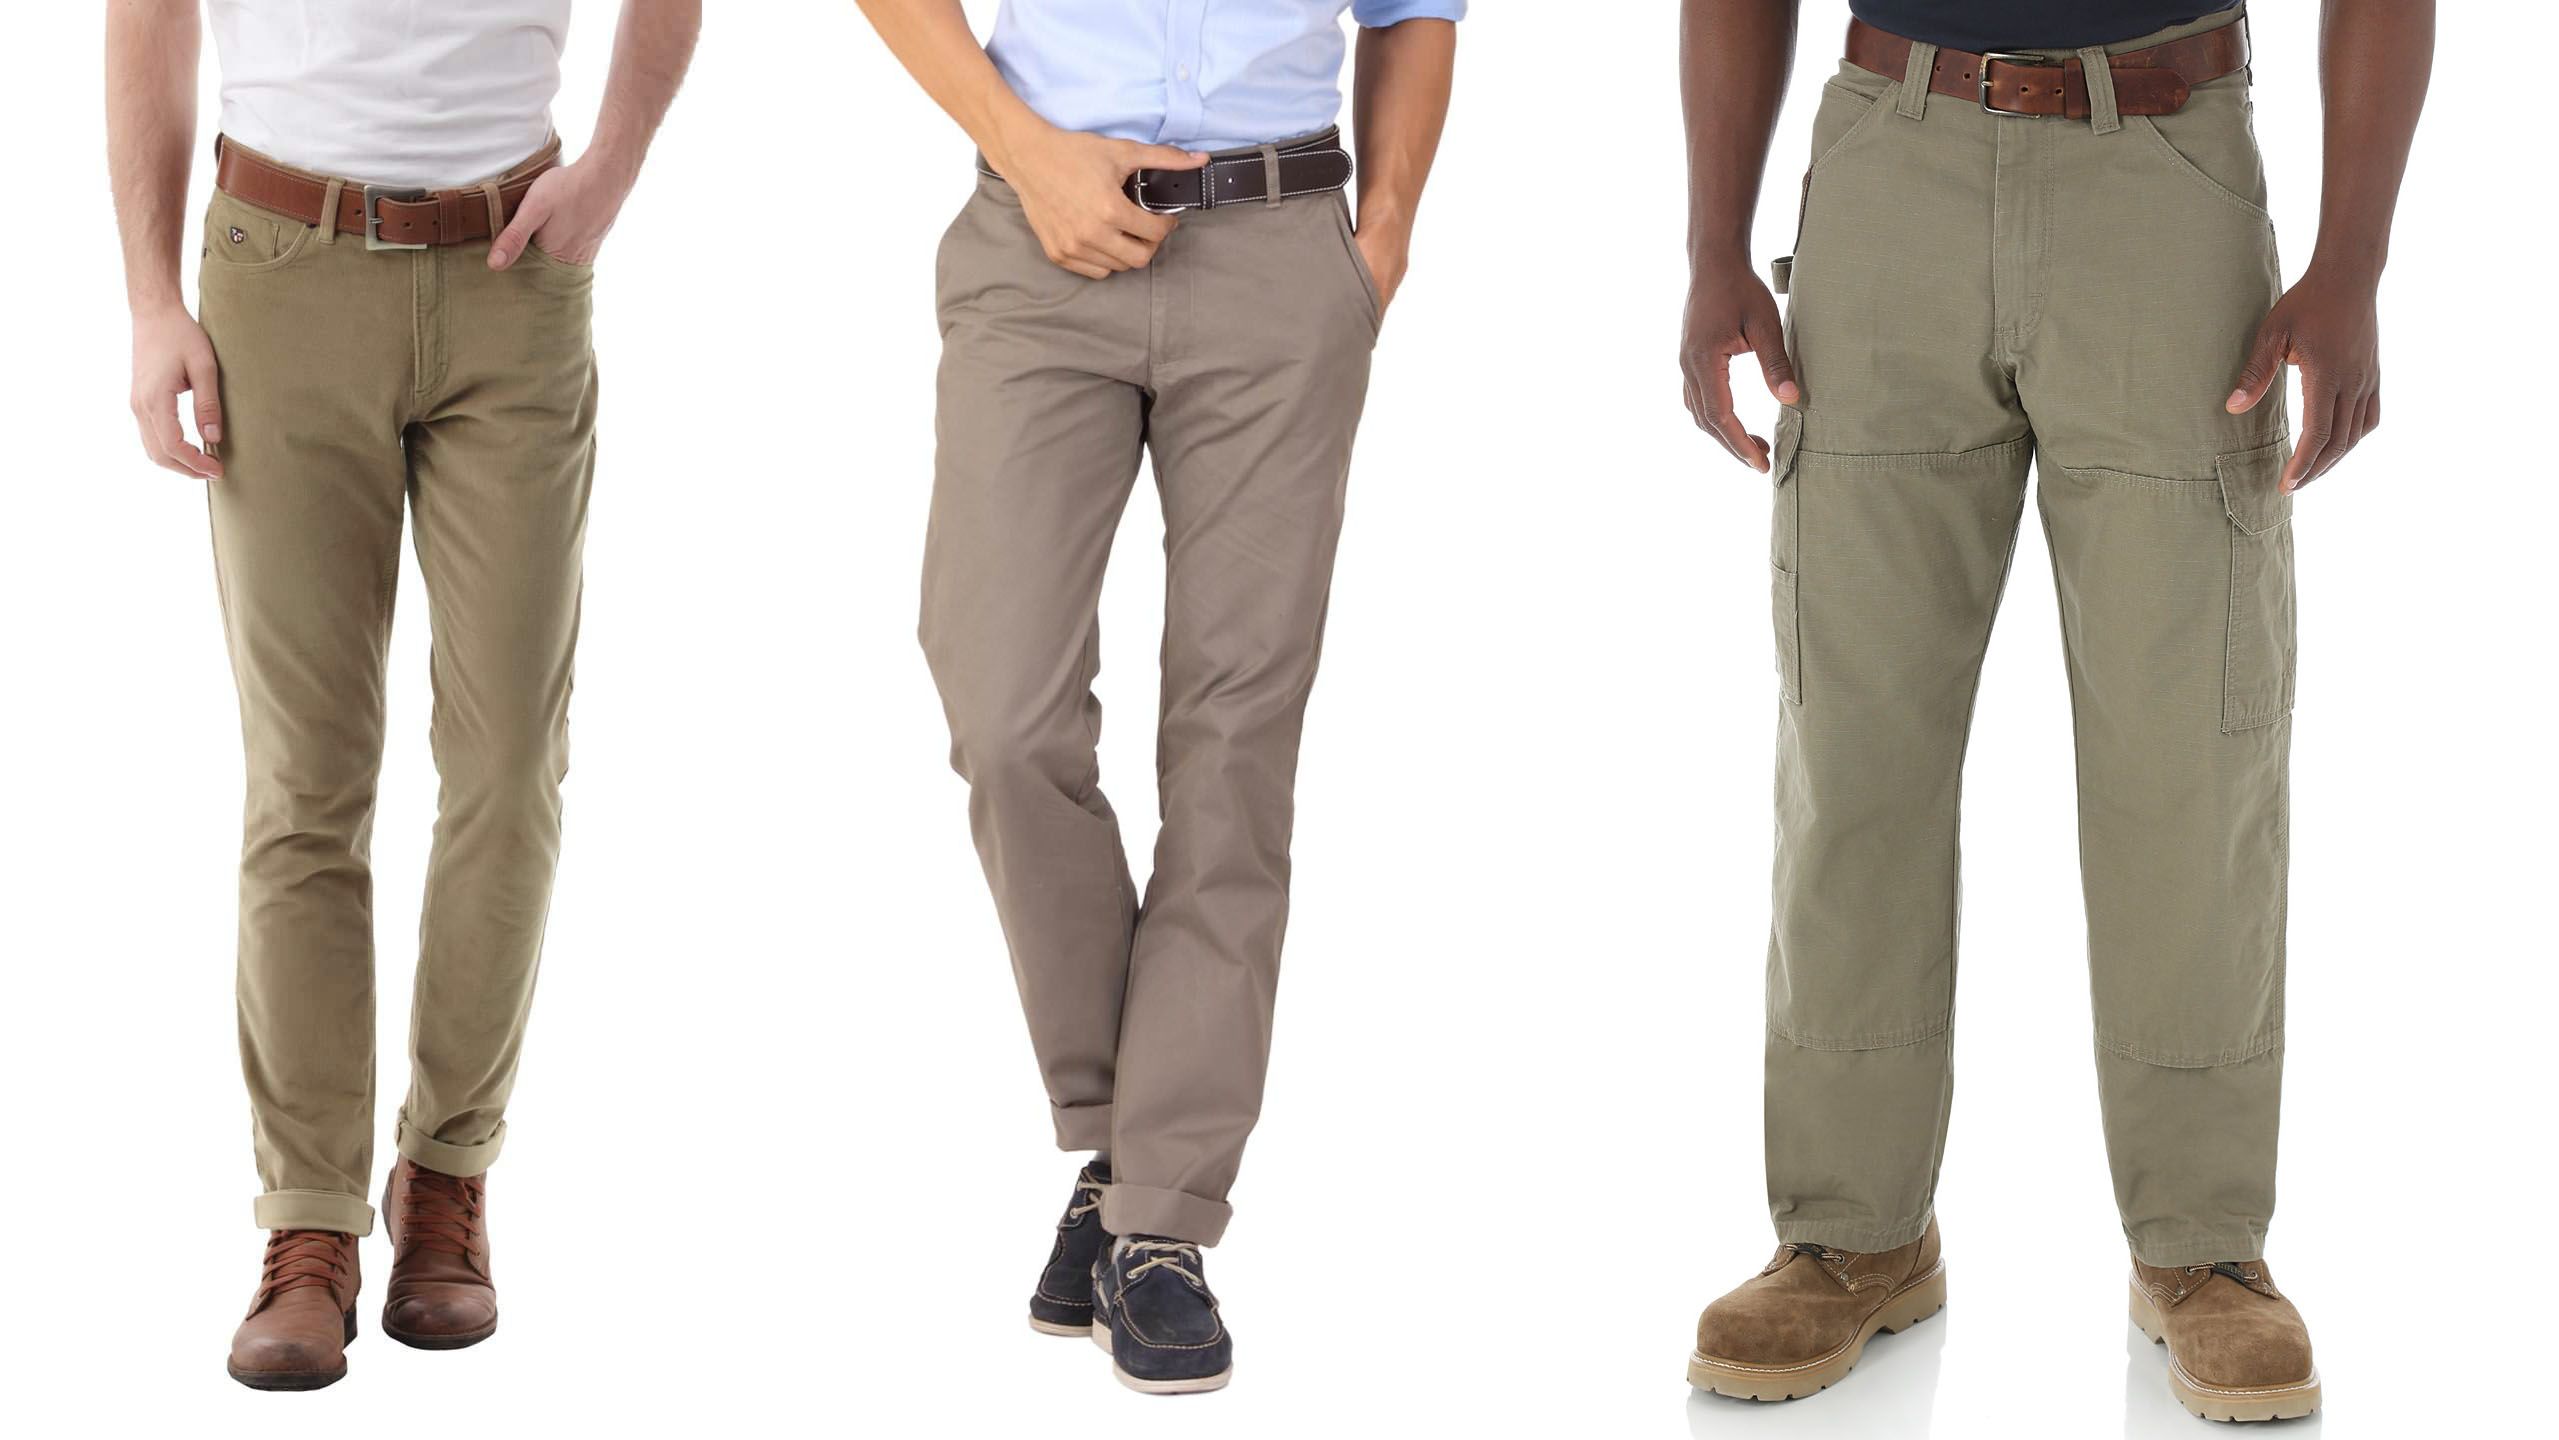 Hiện có rất nhiều mẫu quần kaki nam đẹp, đa dạng từ màu sắc, chất liệu, đến kiểu dáng